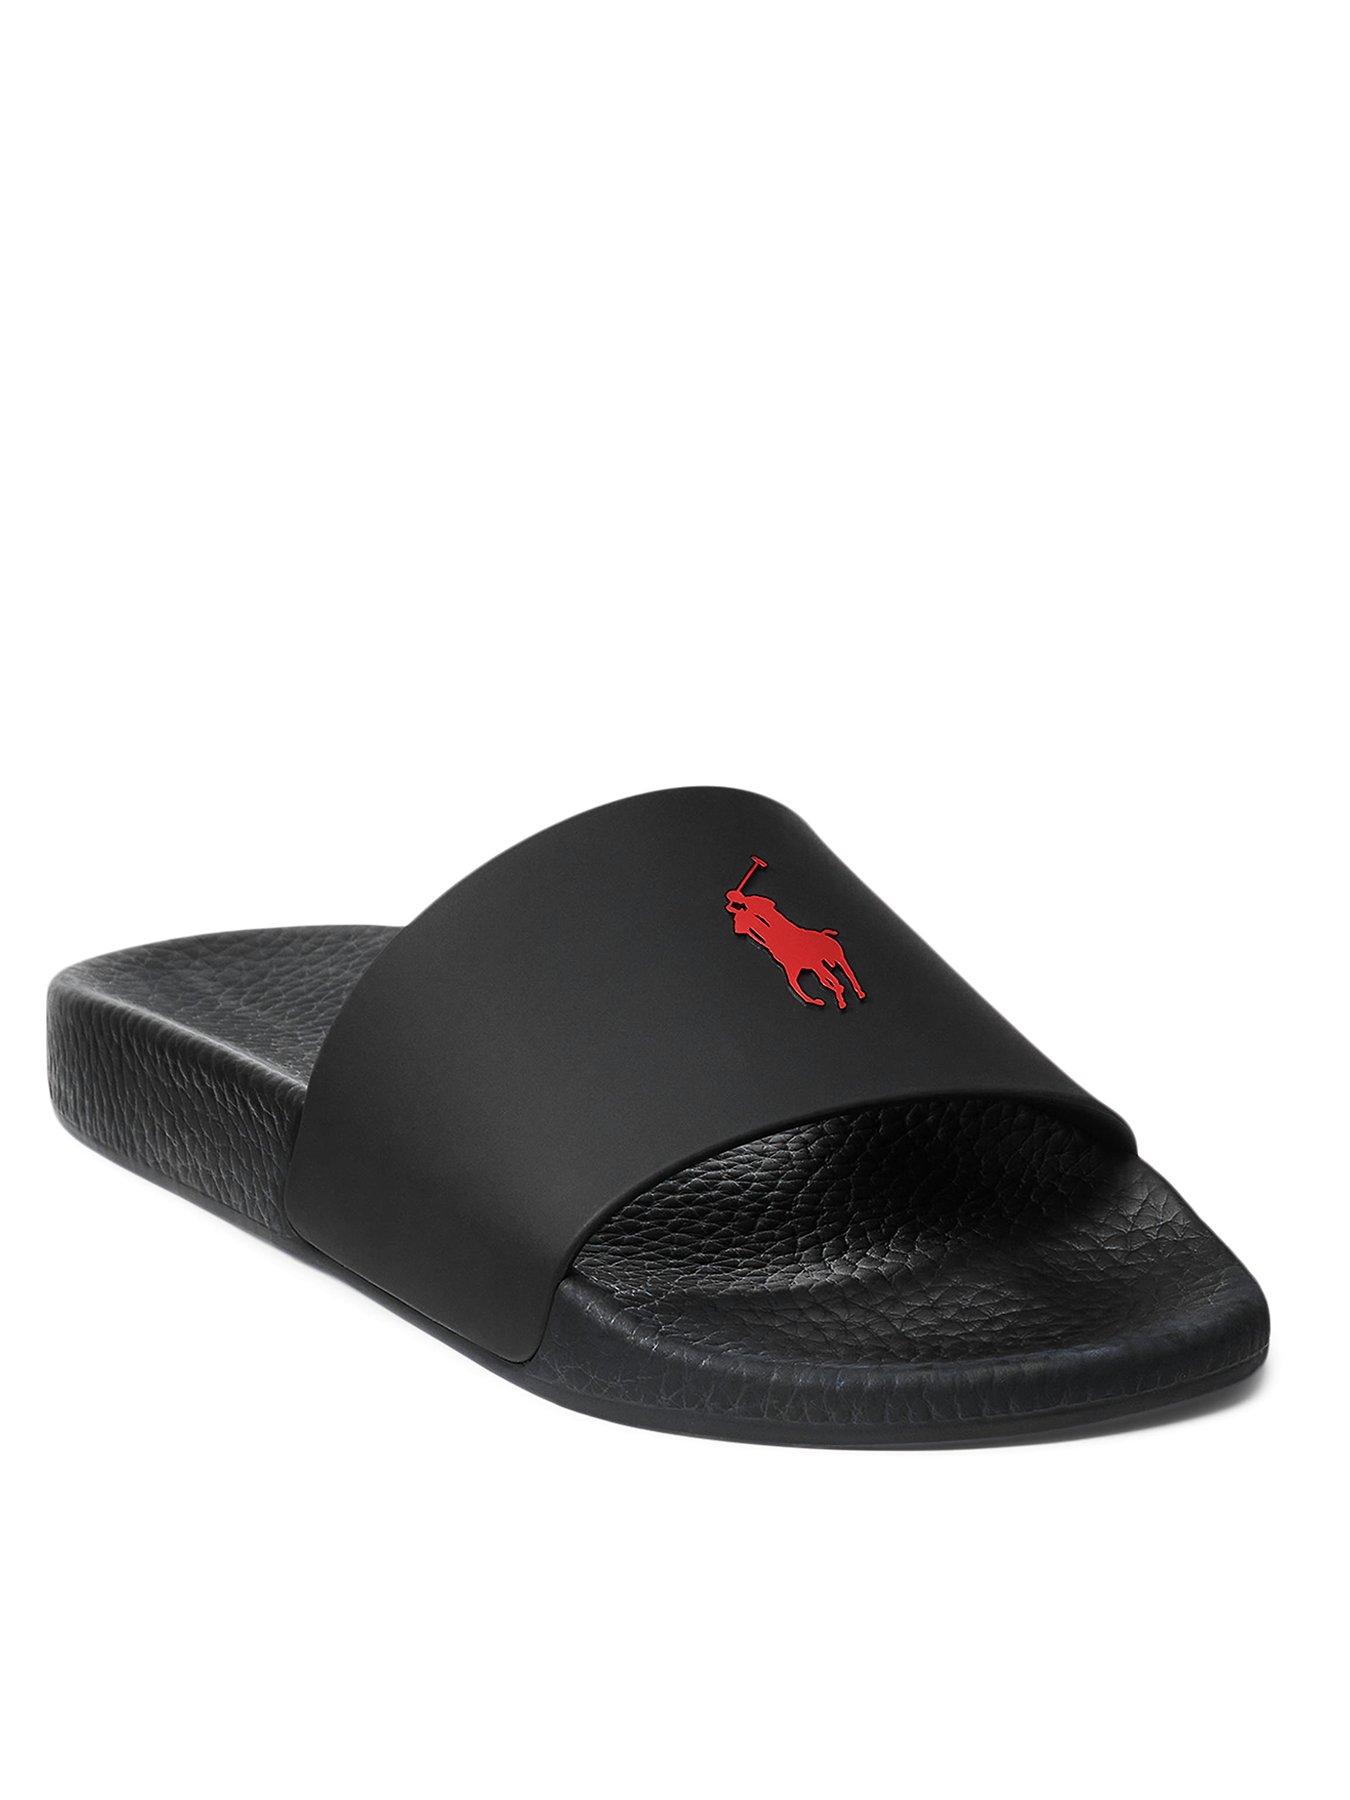 Save 40% slides and flip flops DSquared² Rubber Black Logo Slides for Men Mens Shoes Sandals 